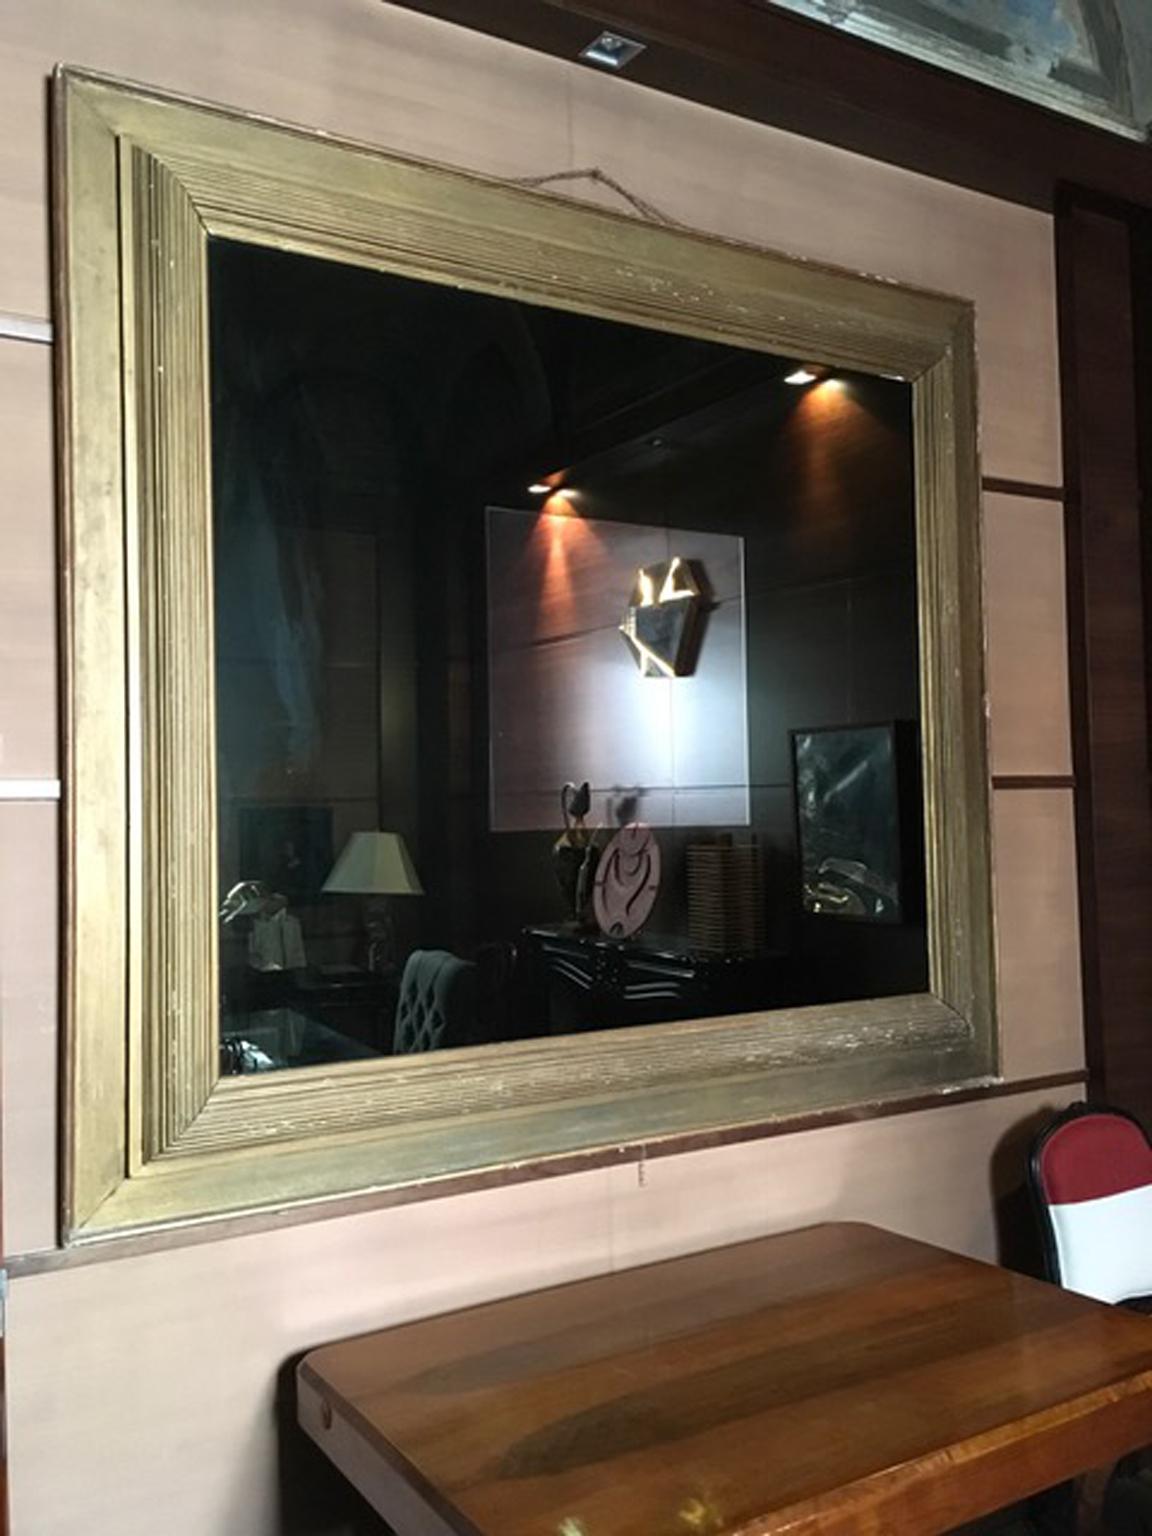 Dieser atemberaubende postmoderne Spiegel hat einen goldenen Holzrahmen aus der Zeit um 1960. Der riesige geräucherte Spiegel hat in der Mitte ein klares Spiegelquadrat. Das Ergebnis ist ein einzigartiges Stück im Stil der italienischen